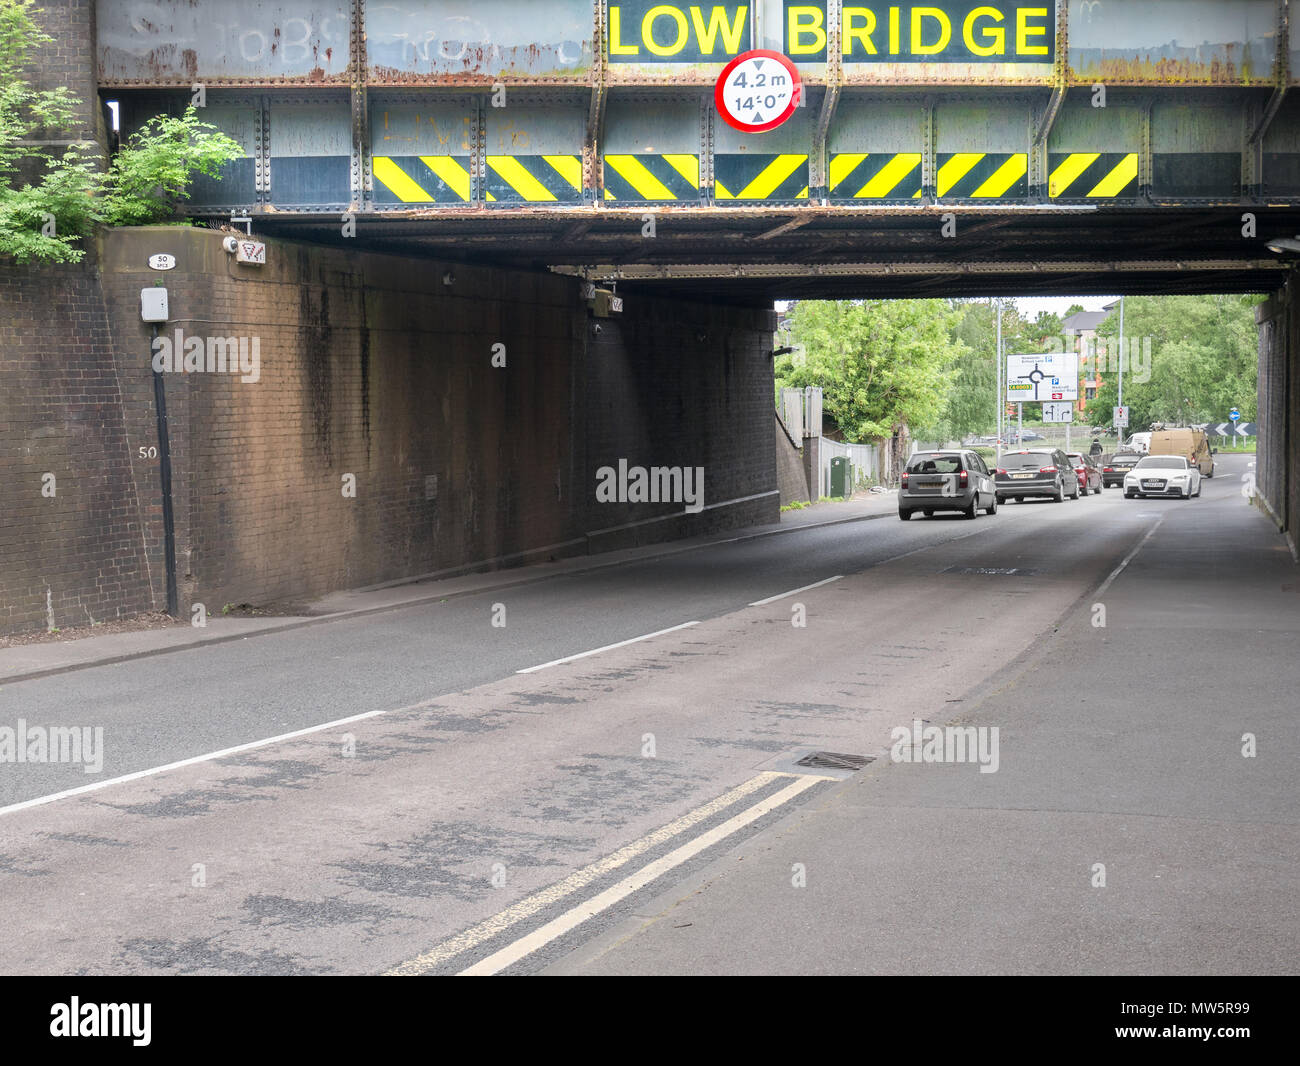 Advertencia a los conductores de vehículos altos sobre un puente ferroviario bajo 4,2 m (14 ft) o en la A4300 Rothwell Road, cerca del centro de la ciudad de Kettering, Inglaterra. Foto de stock